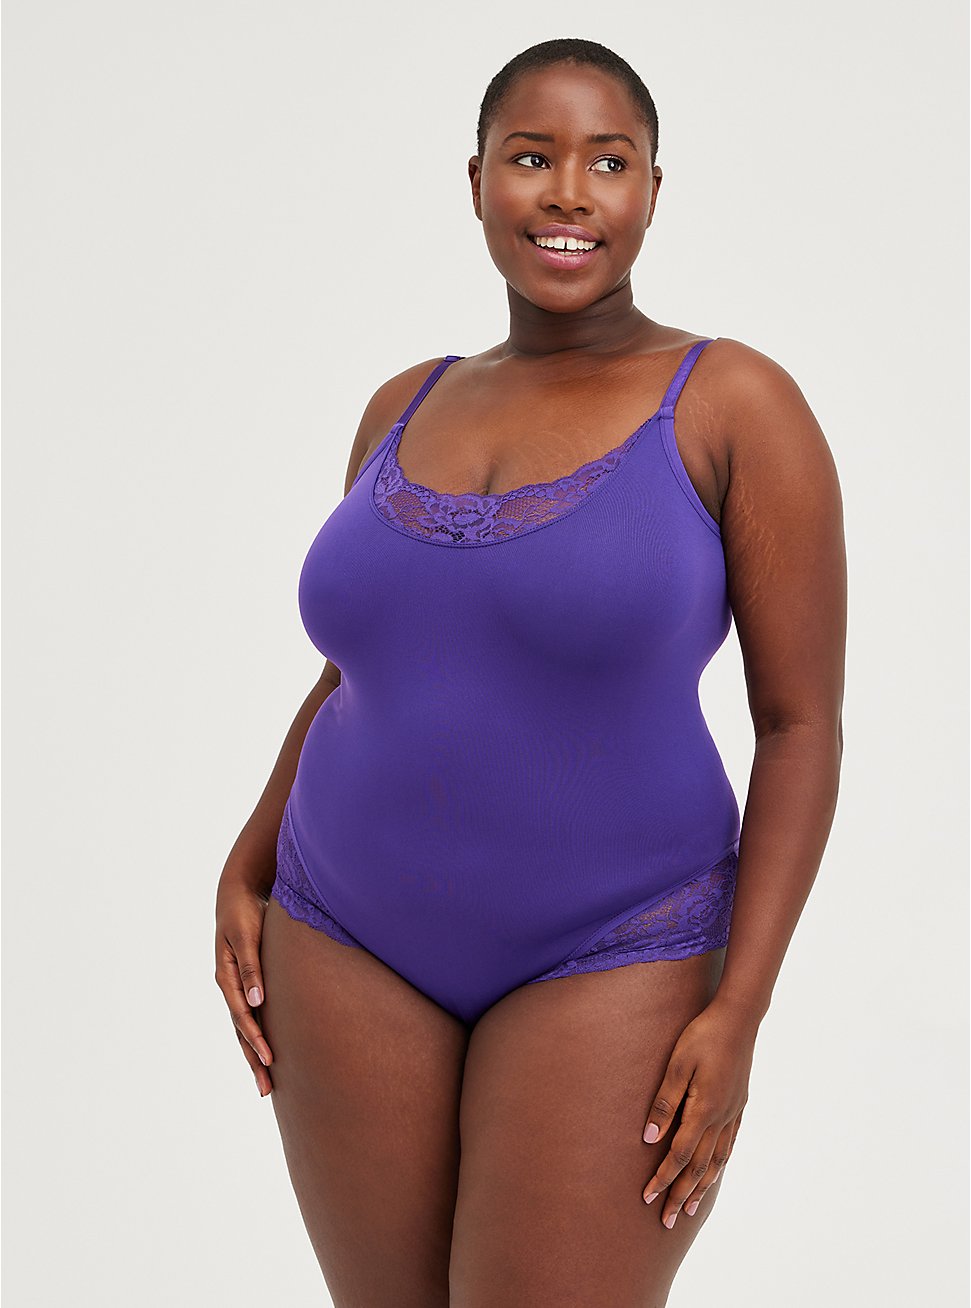 Plus Size Scoop Neck Bodysuit - Seamless Lace Flirt Purple, PURPLE, hi-res